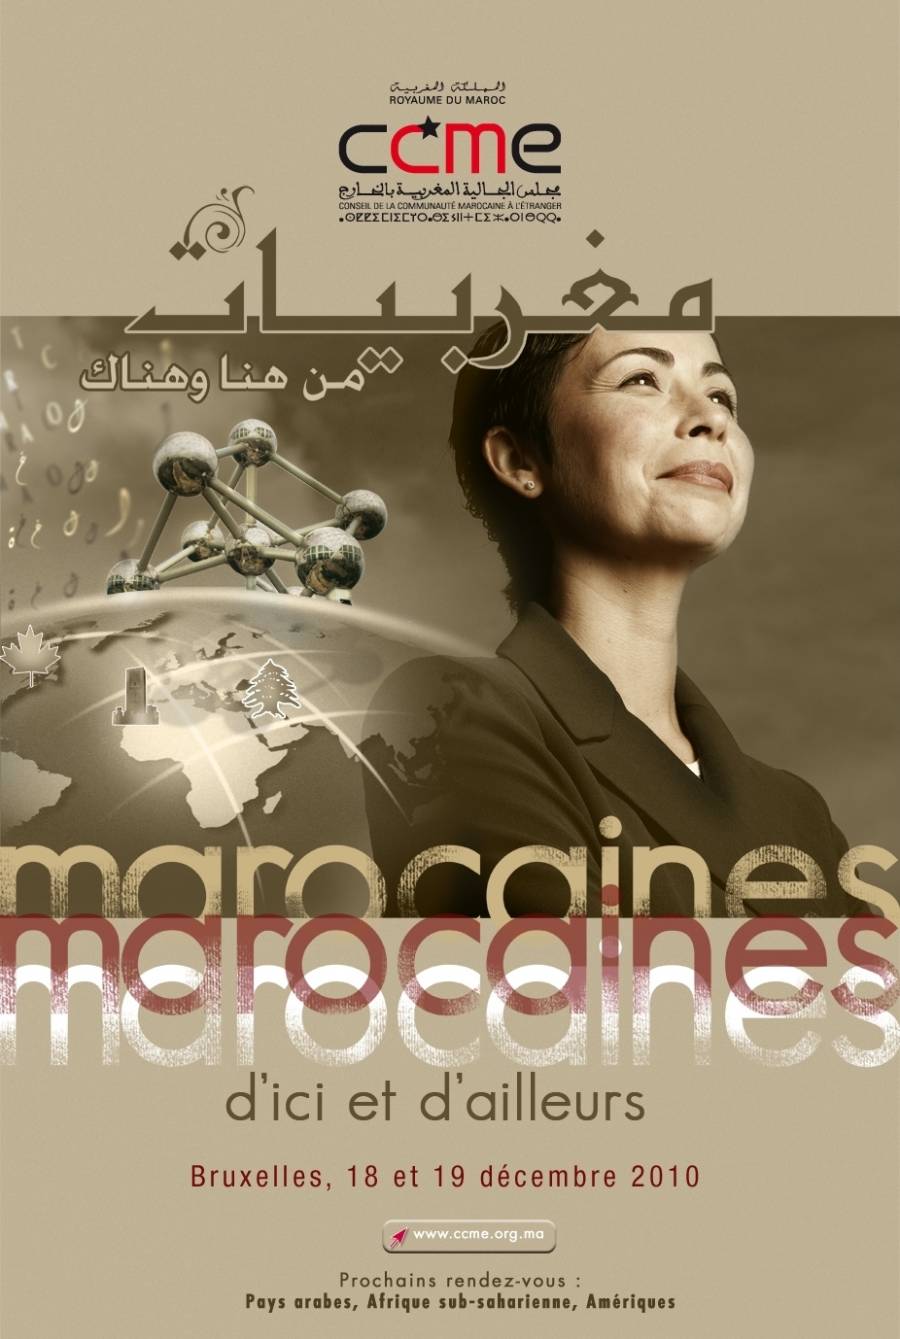 Bruxelles - 18-19 Décembre 2010 - Marocaines d'ici et d'ailleurs, troisième édition